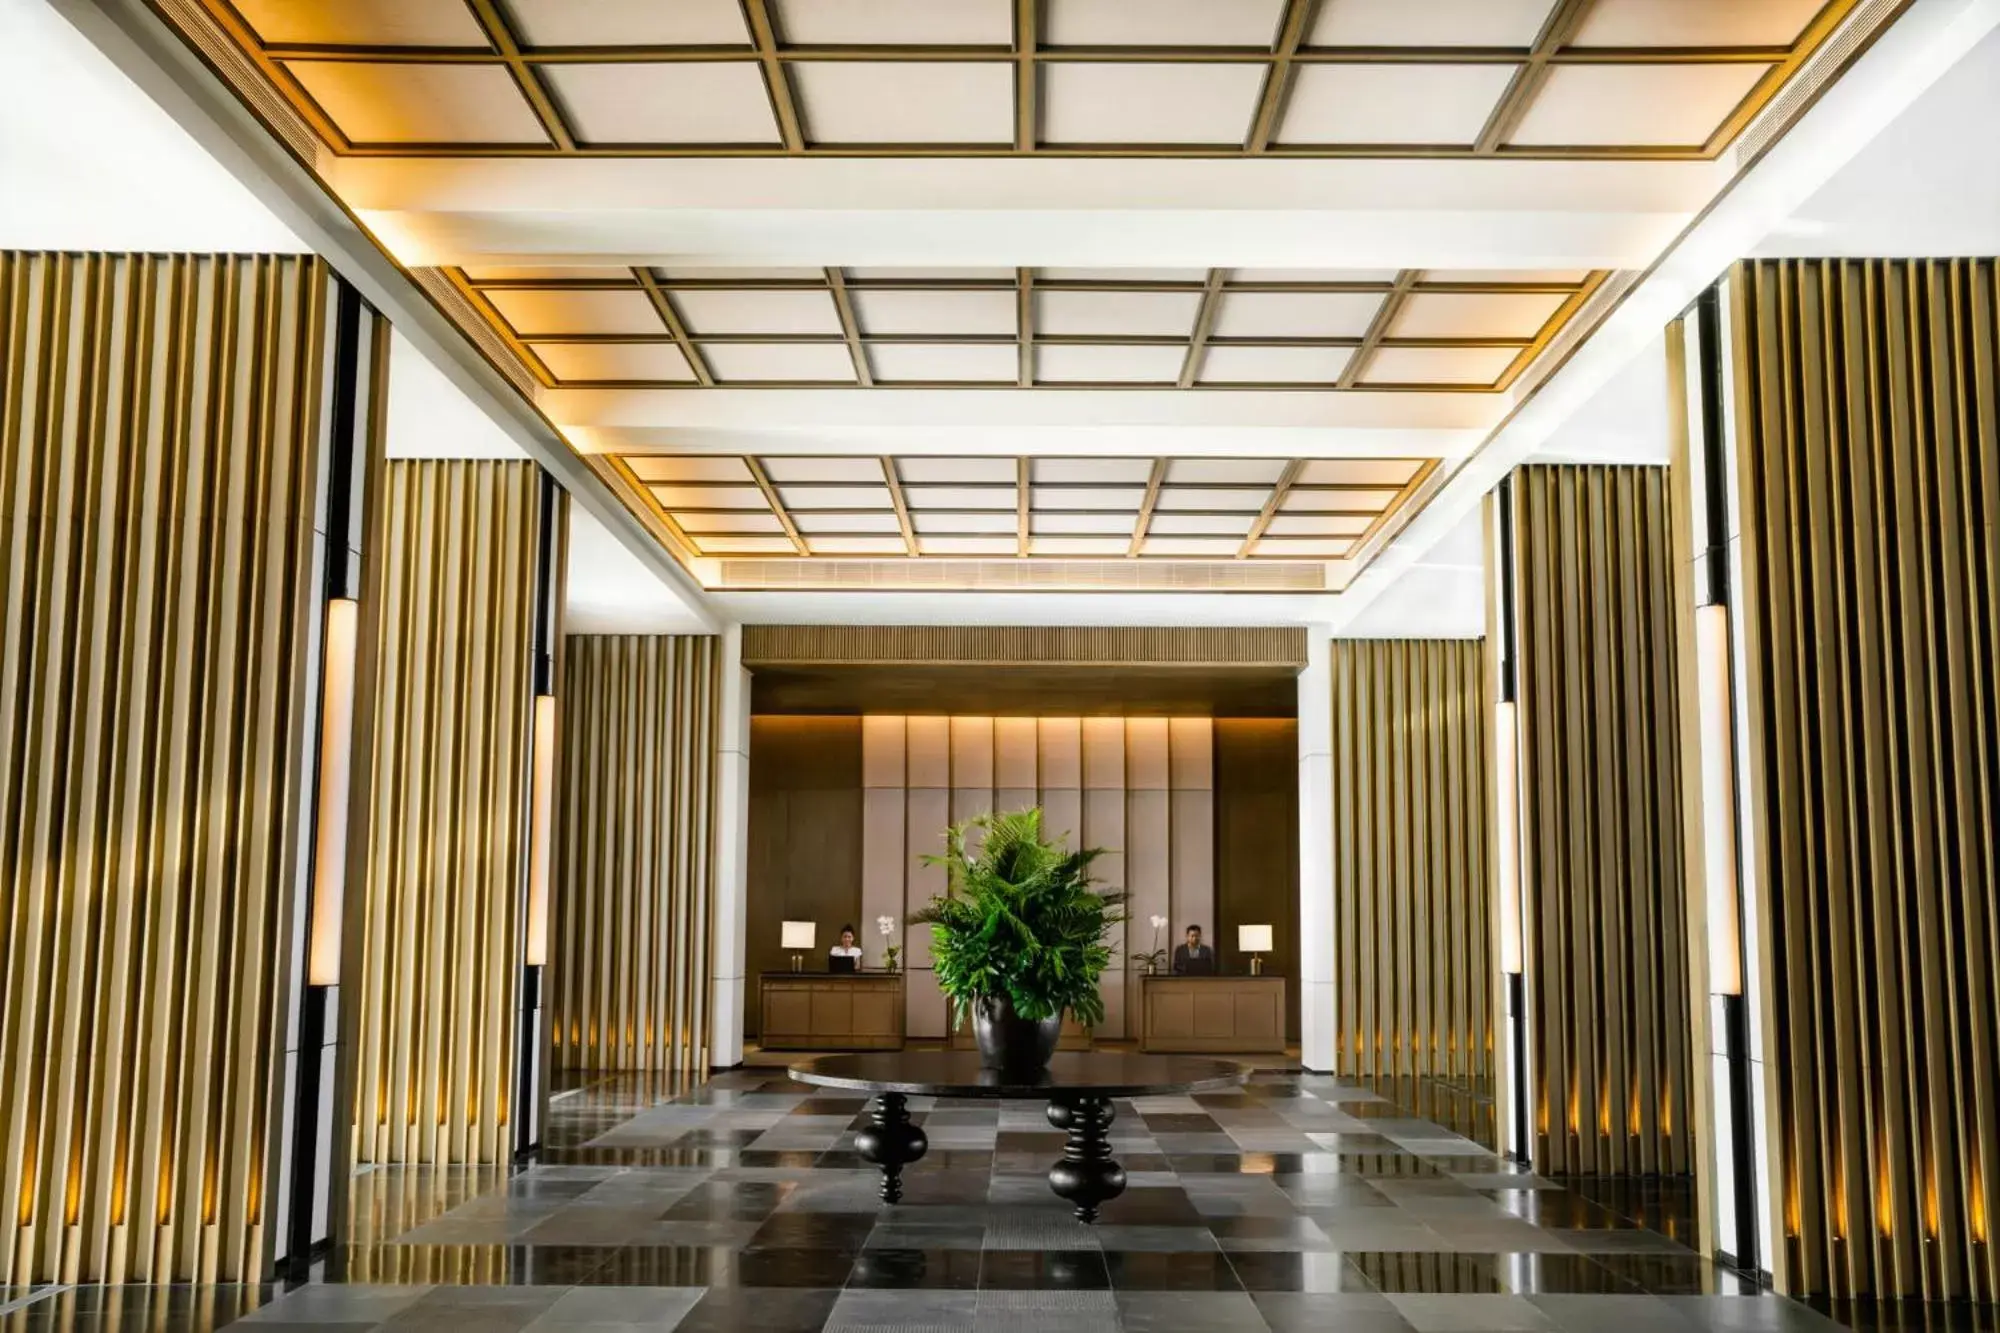 Lobby or reception in New World Hoiana Hotel